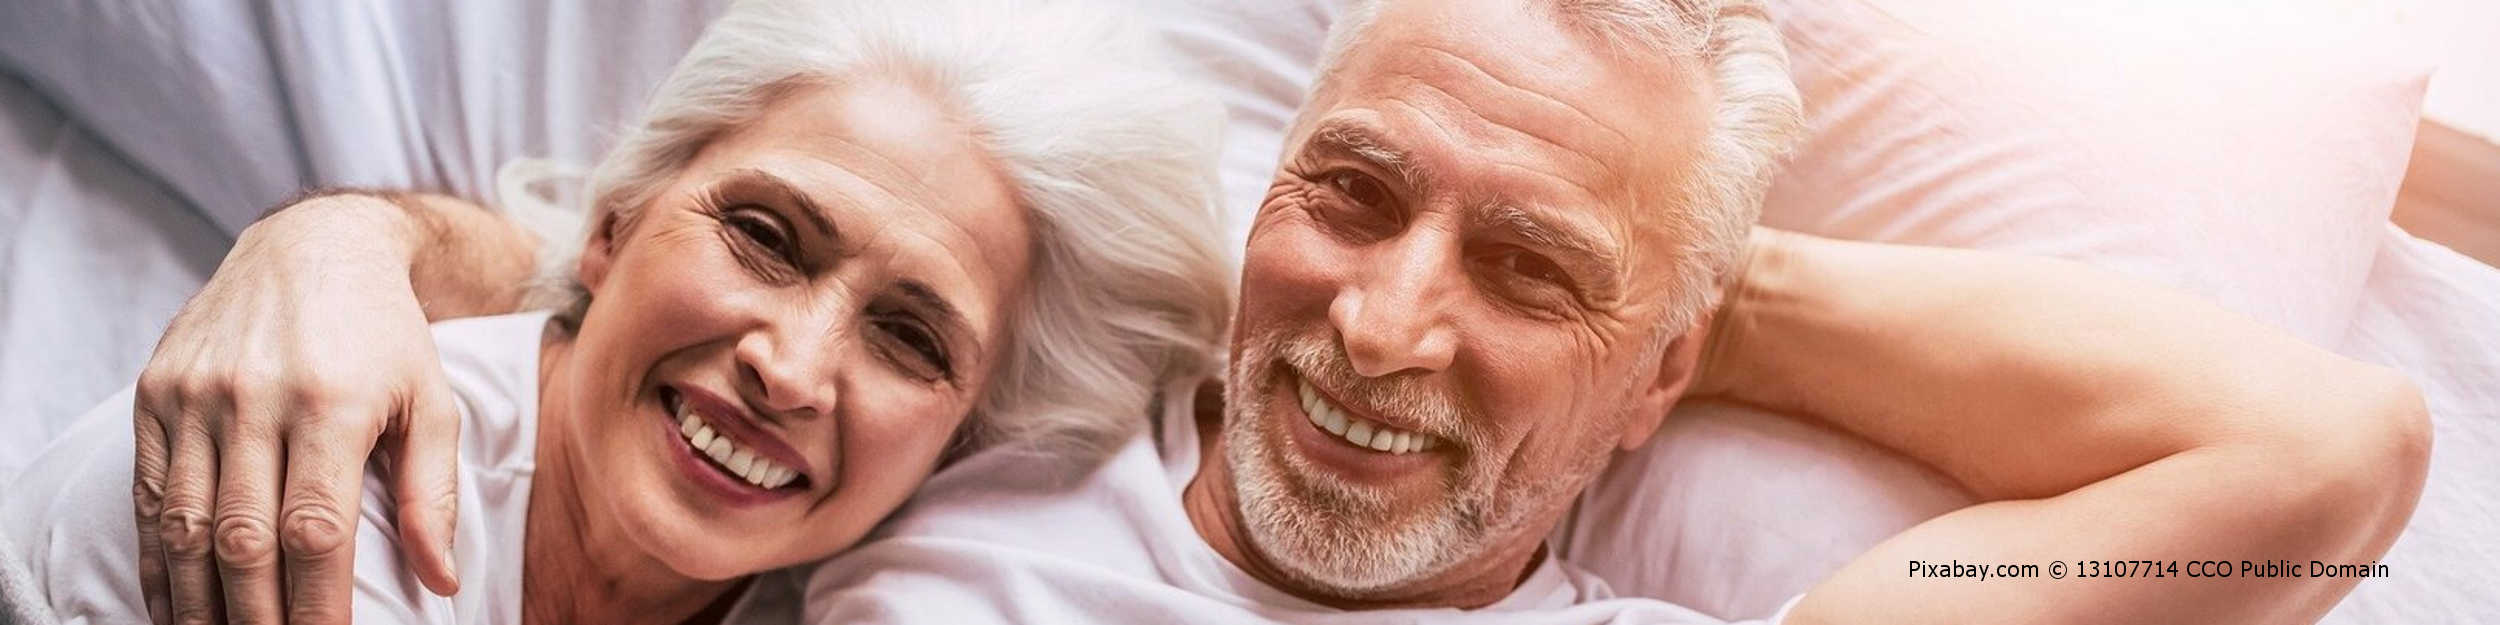 Älteres Paar ist nach Behandlung der vergrößerten Prostata im Bett wieder glücklich.